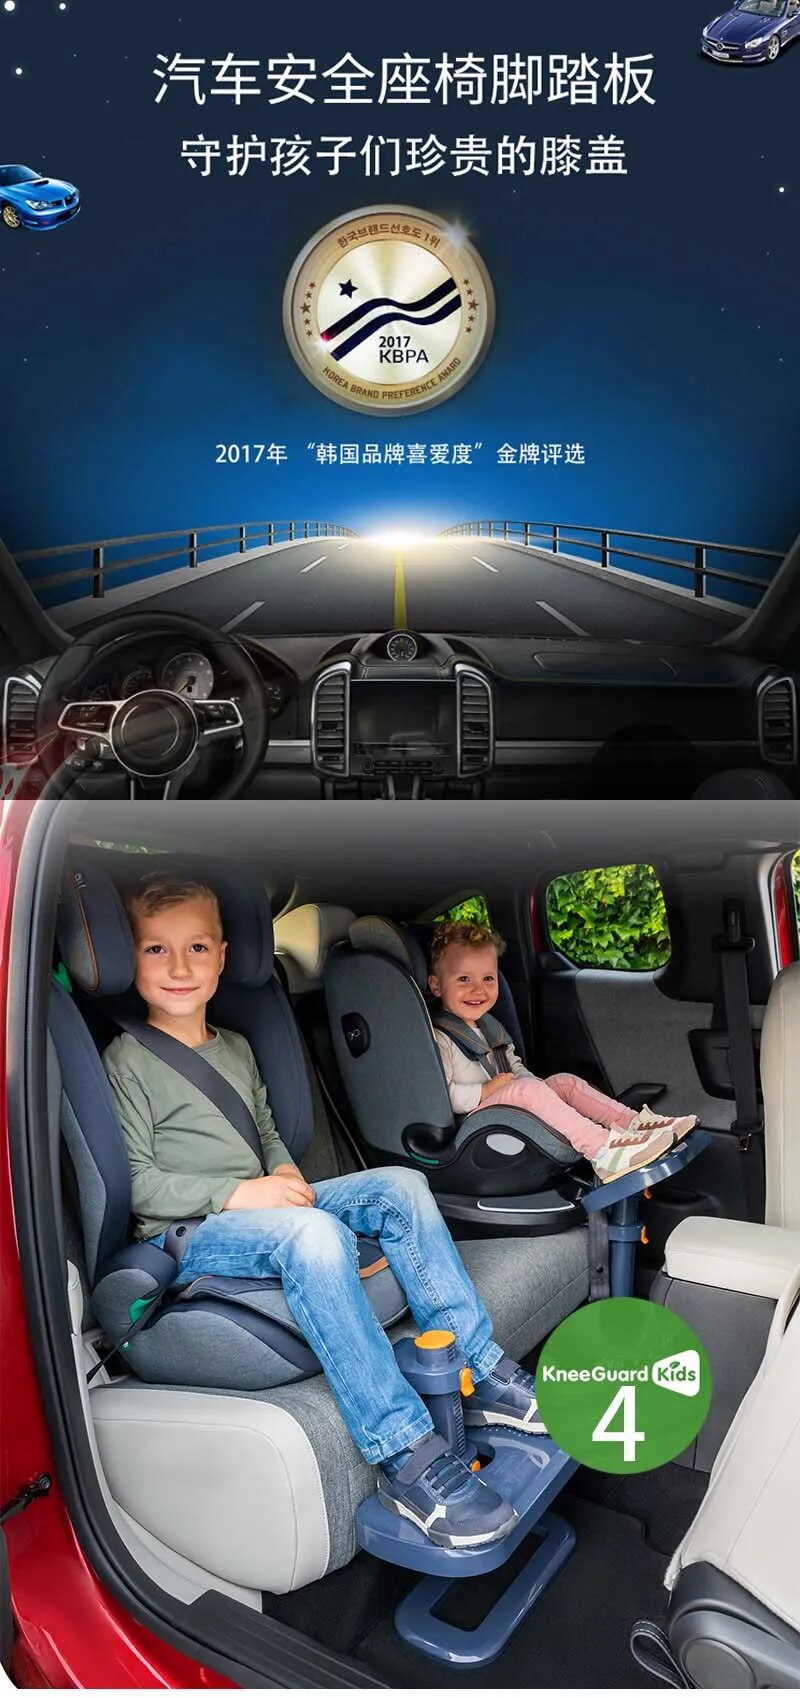 Kneeguard Kids Car Seat Foot Rest